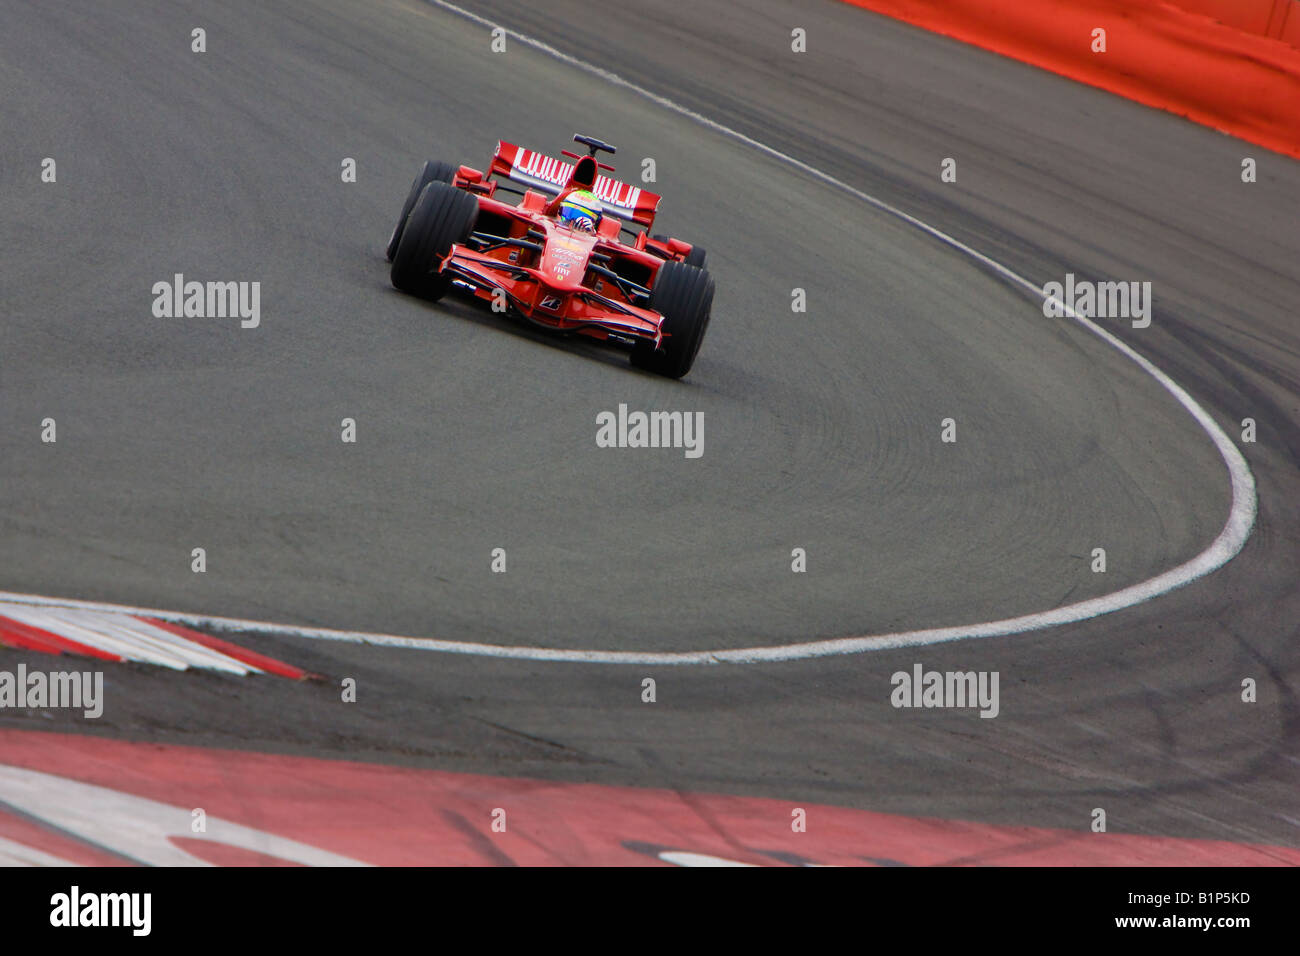 Felipe Massa Formula 1 Ferrari racing brasiliano Foto Stock